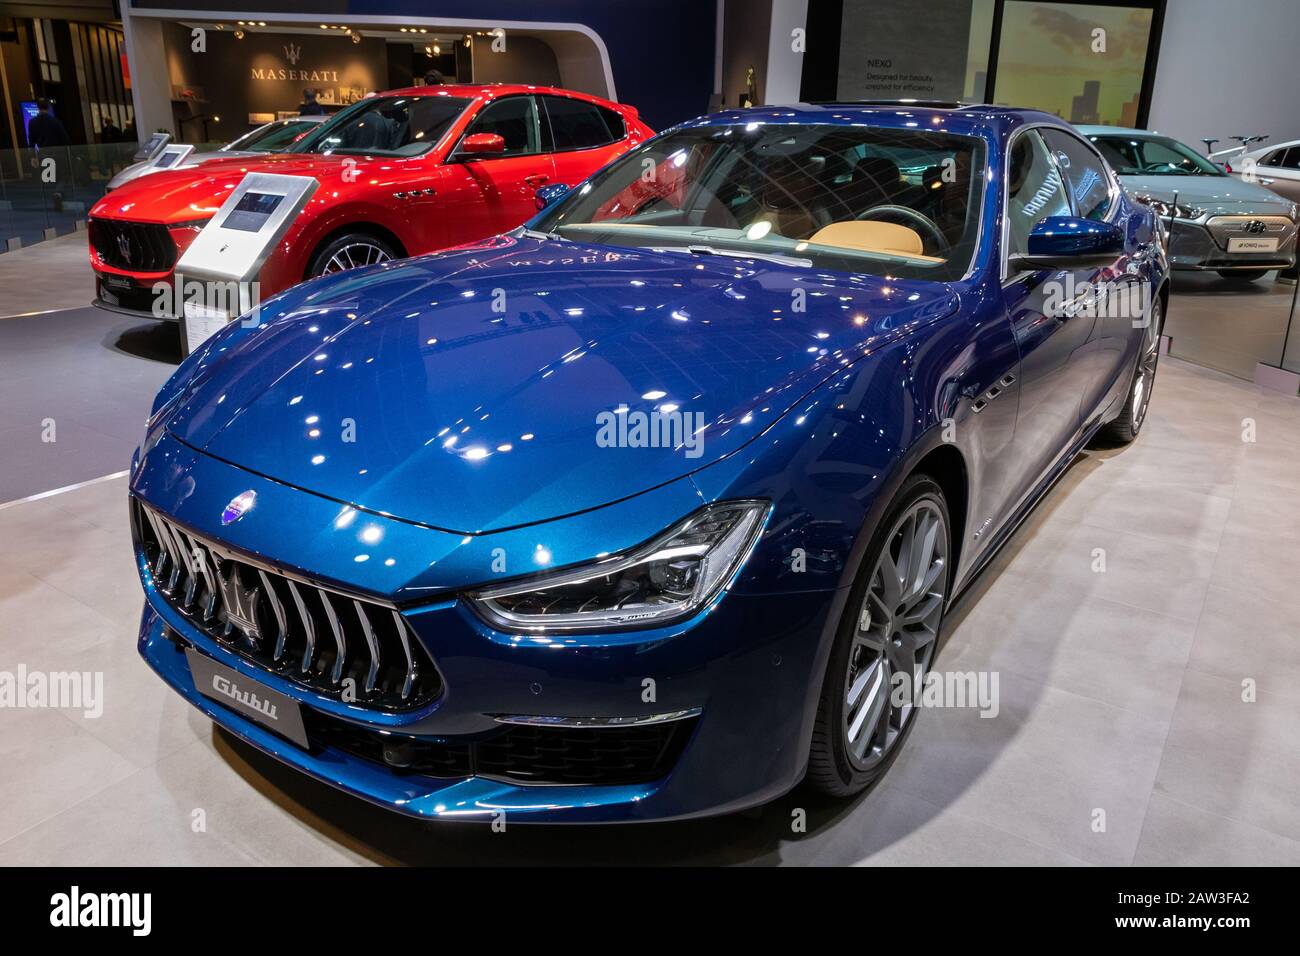 Bruxelles - 9 GENNAIO 2020: La Maserati Ghibli è stata presentata al Motor Show di Bruxelles Autosalon 2020. Foto Stock